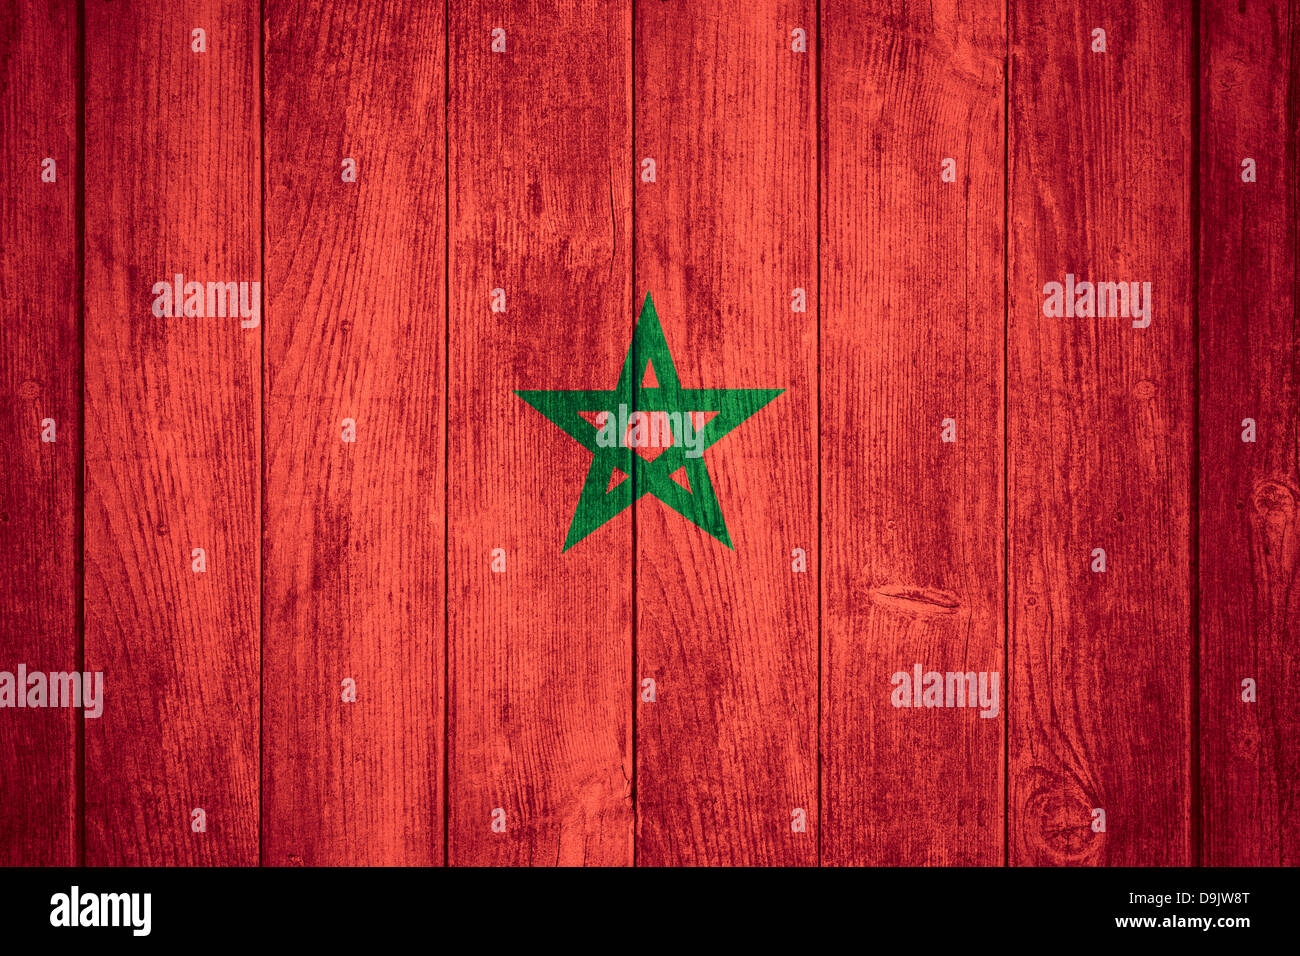 Pabellón de Marruecos o rojo y verde bandera marroquí sobre fondo de madera Foto de stock